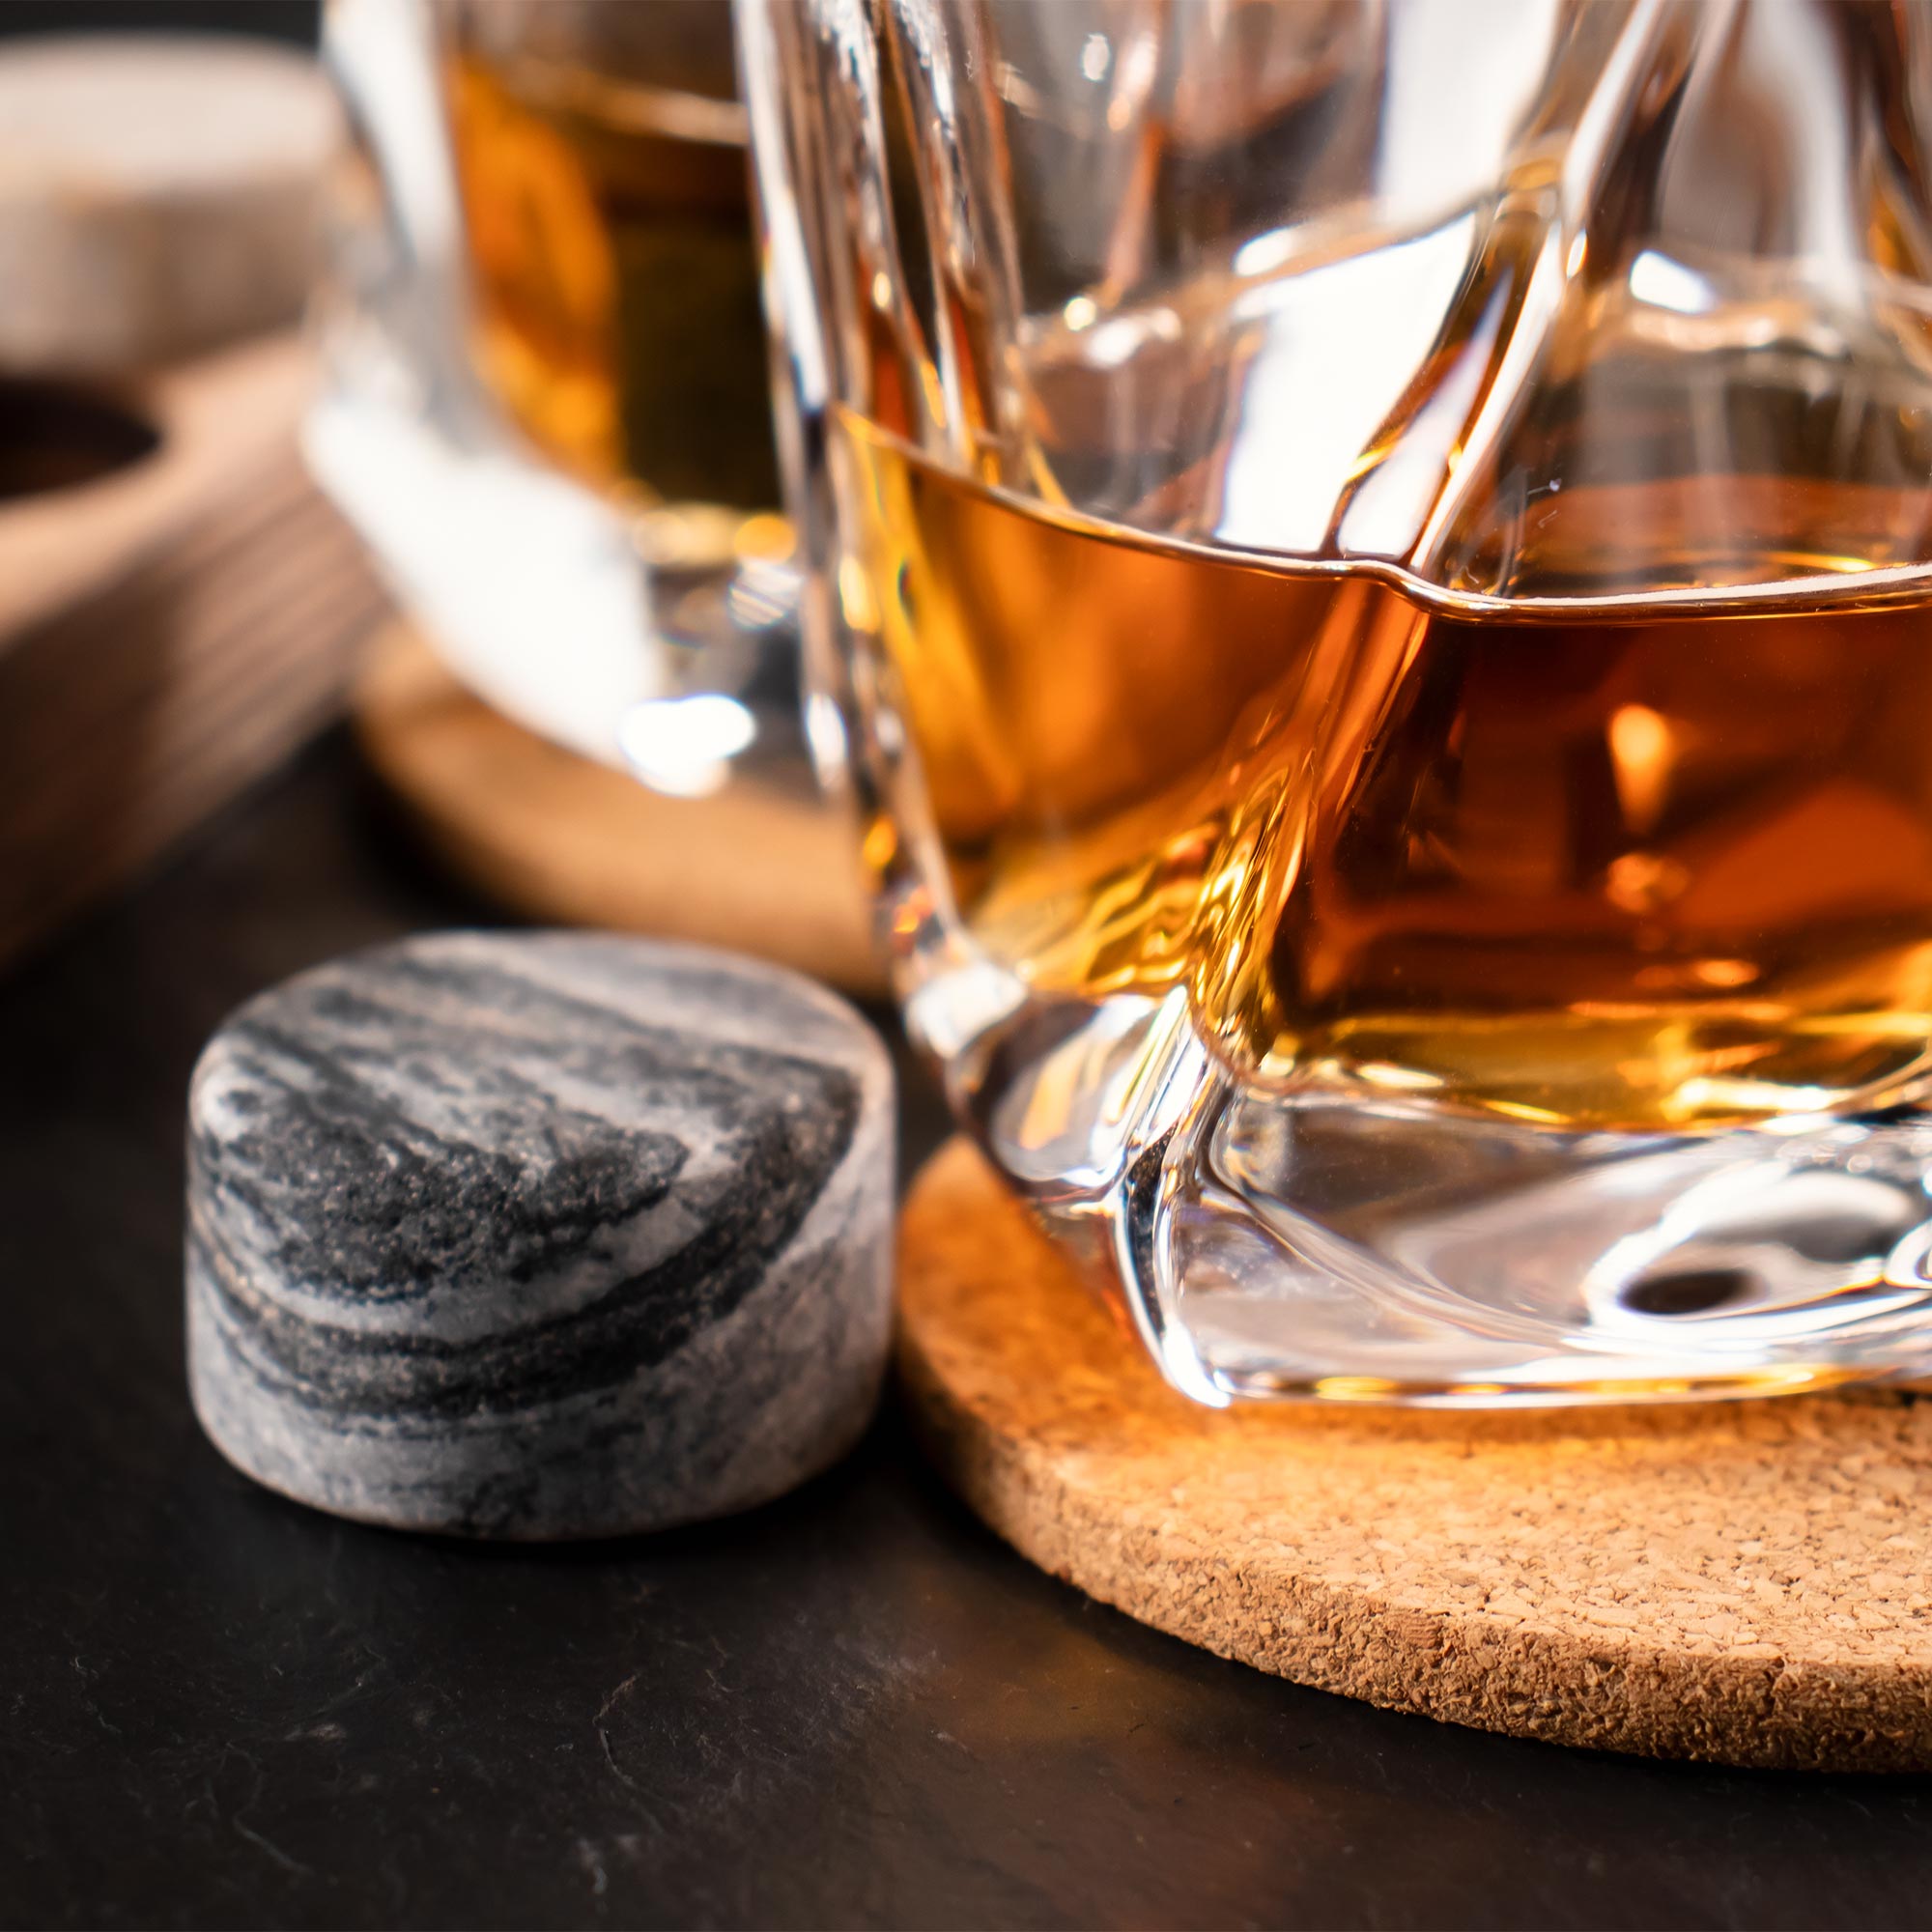 Whisky Set zum 30. Geburtstag mit Gläsern und Kühlsteinen, gravierte Whiskey Geschenkbox, Whiskygläser Kork Untersetzer und Granit Whiskysteine